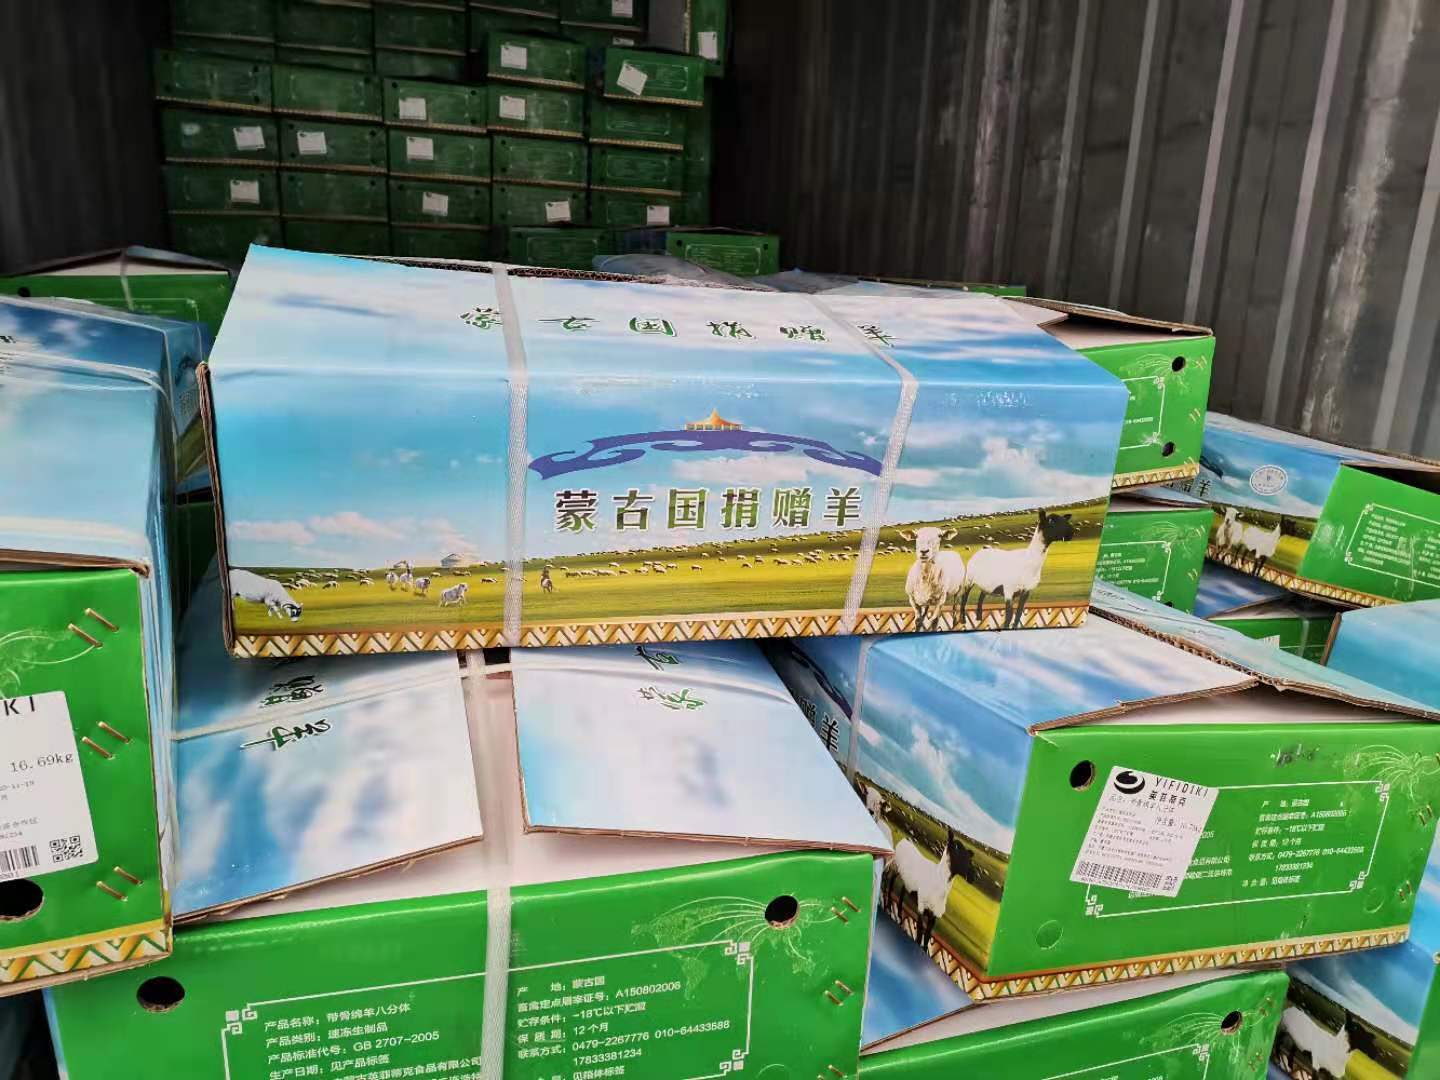 蒙古国向中国捐赠3万只羊 其中756箱羊肉抵达浙江